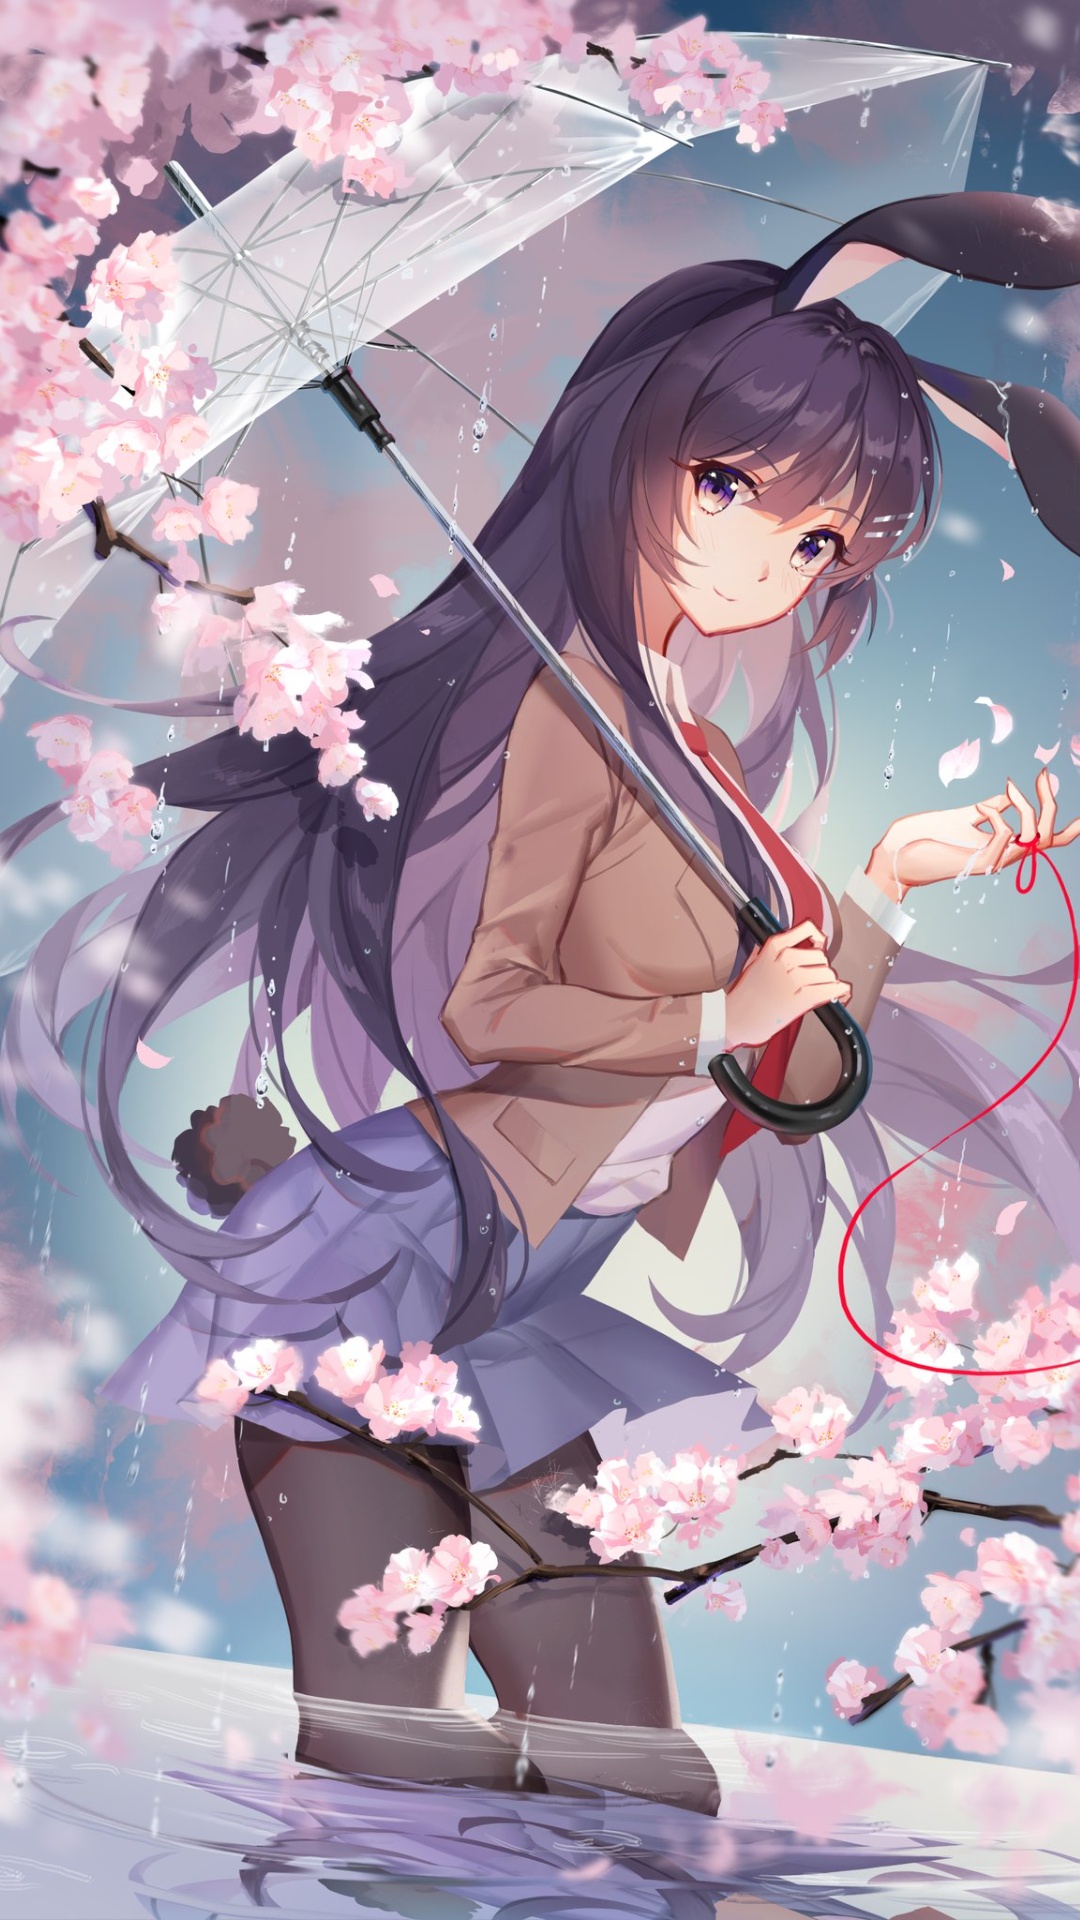 Anime Girl With Umbrella Lockscreen Wallpaper